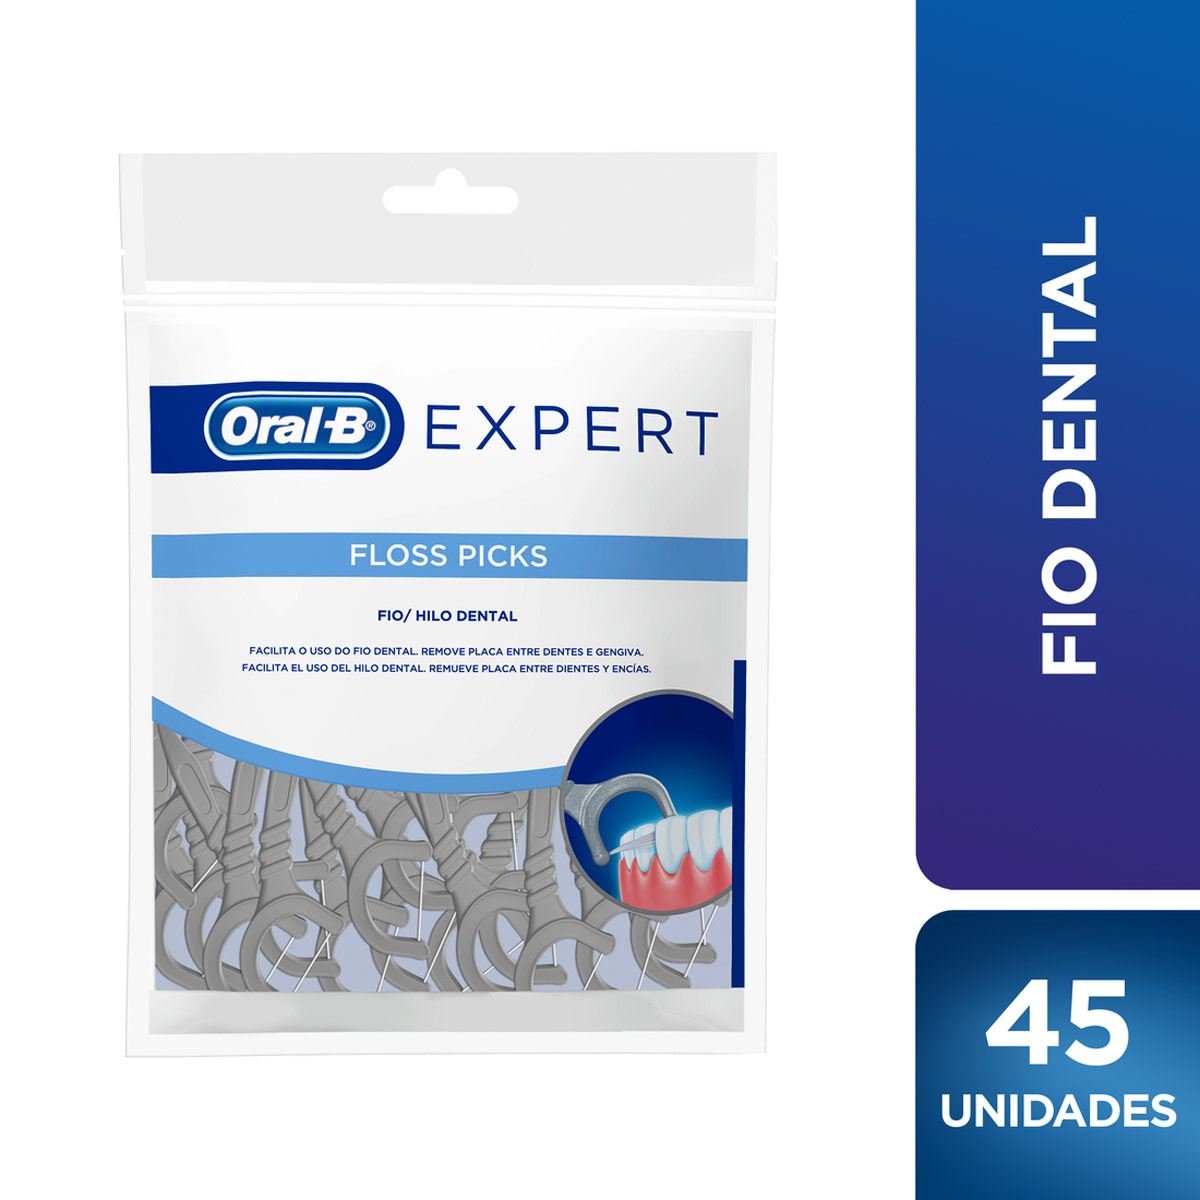 ORAL-B SUPERFLOSS.3 Cajas x 50 - Farmacia de Casa